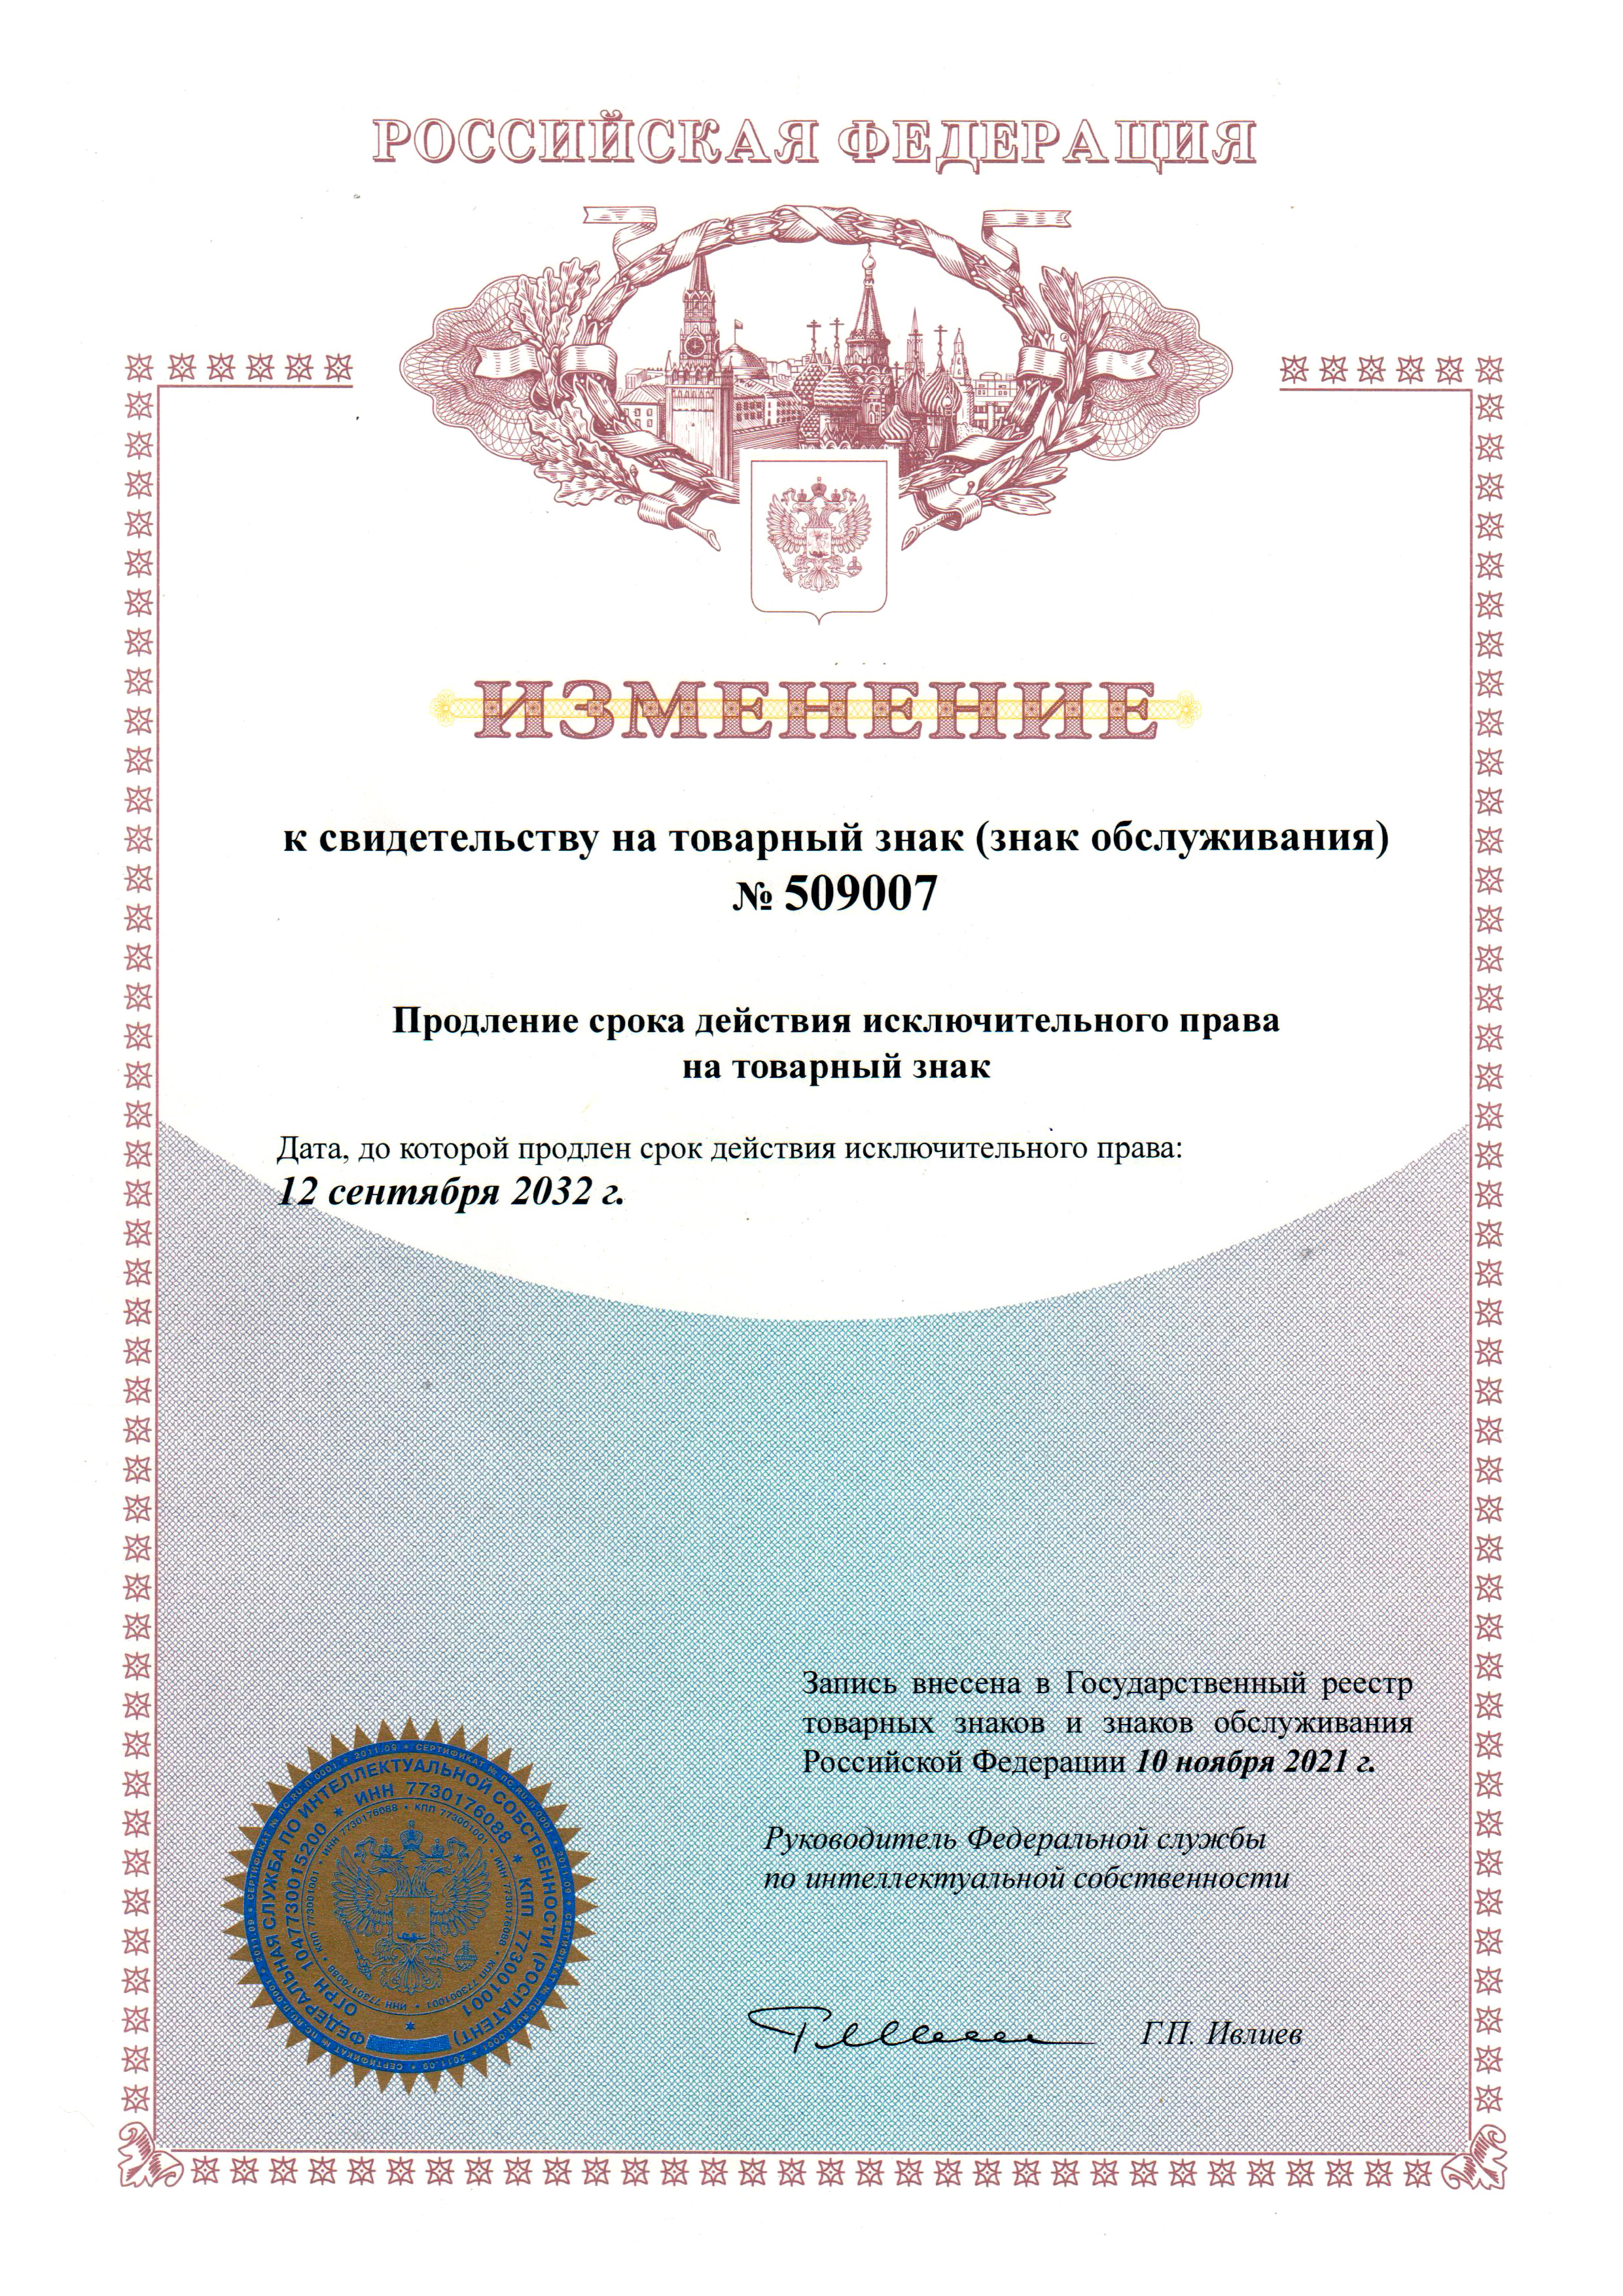 Свидетельство о продлении регистрации товарного знака Thermo на территории РФ